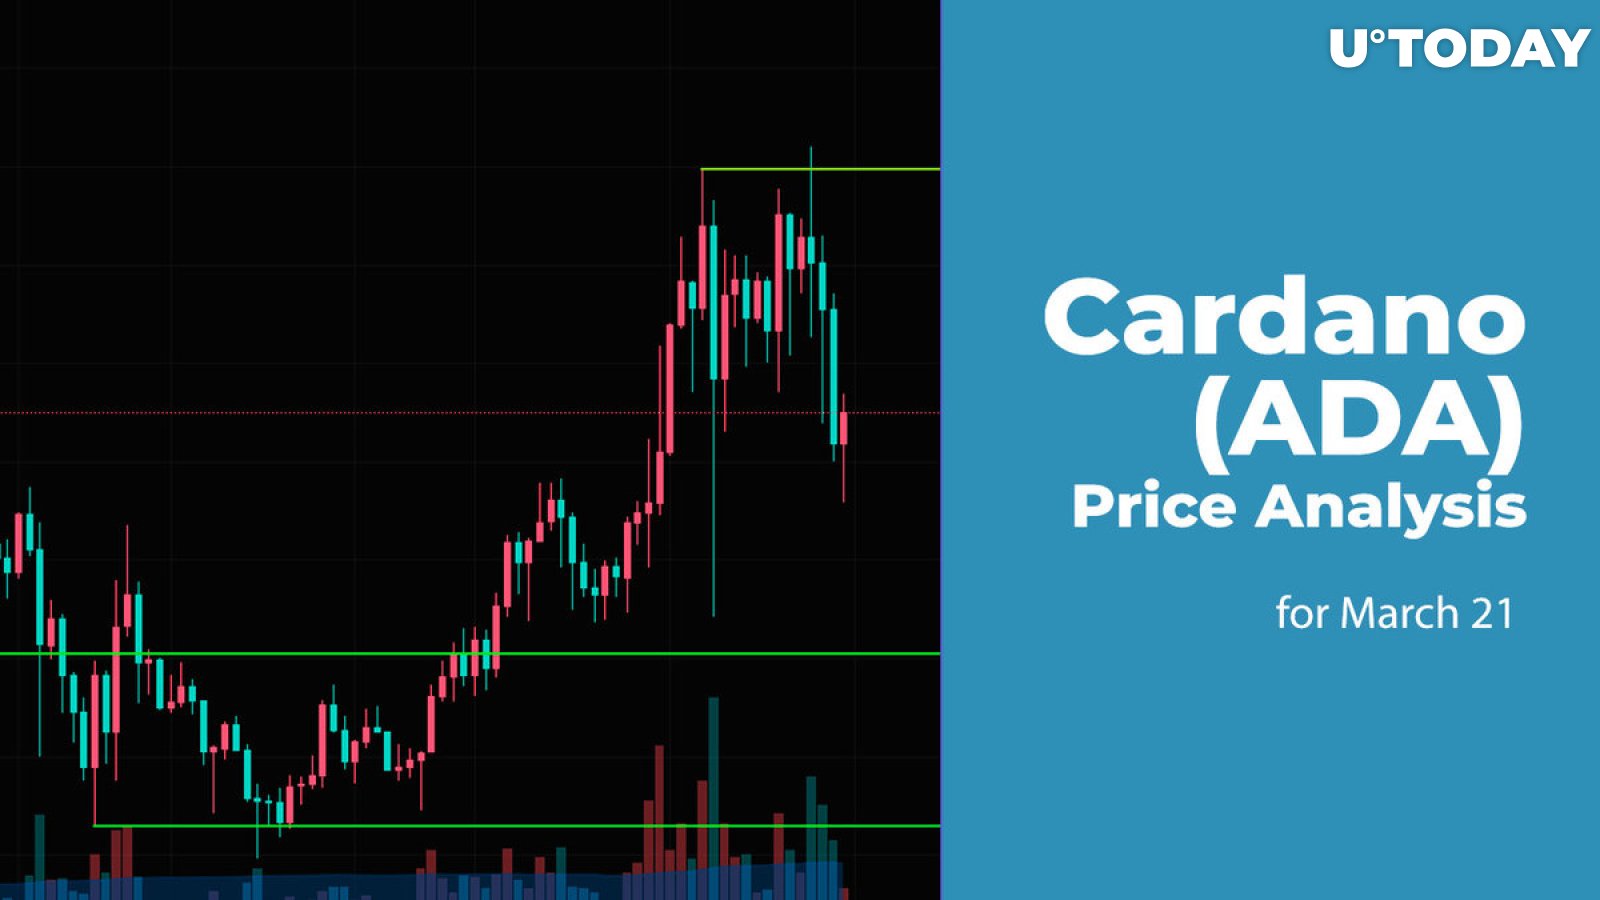 Cardano (ADA) Price Prediction for March 21